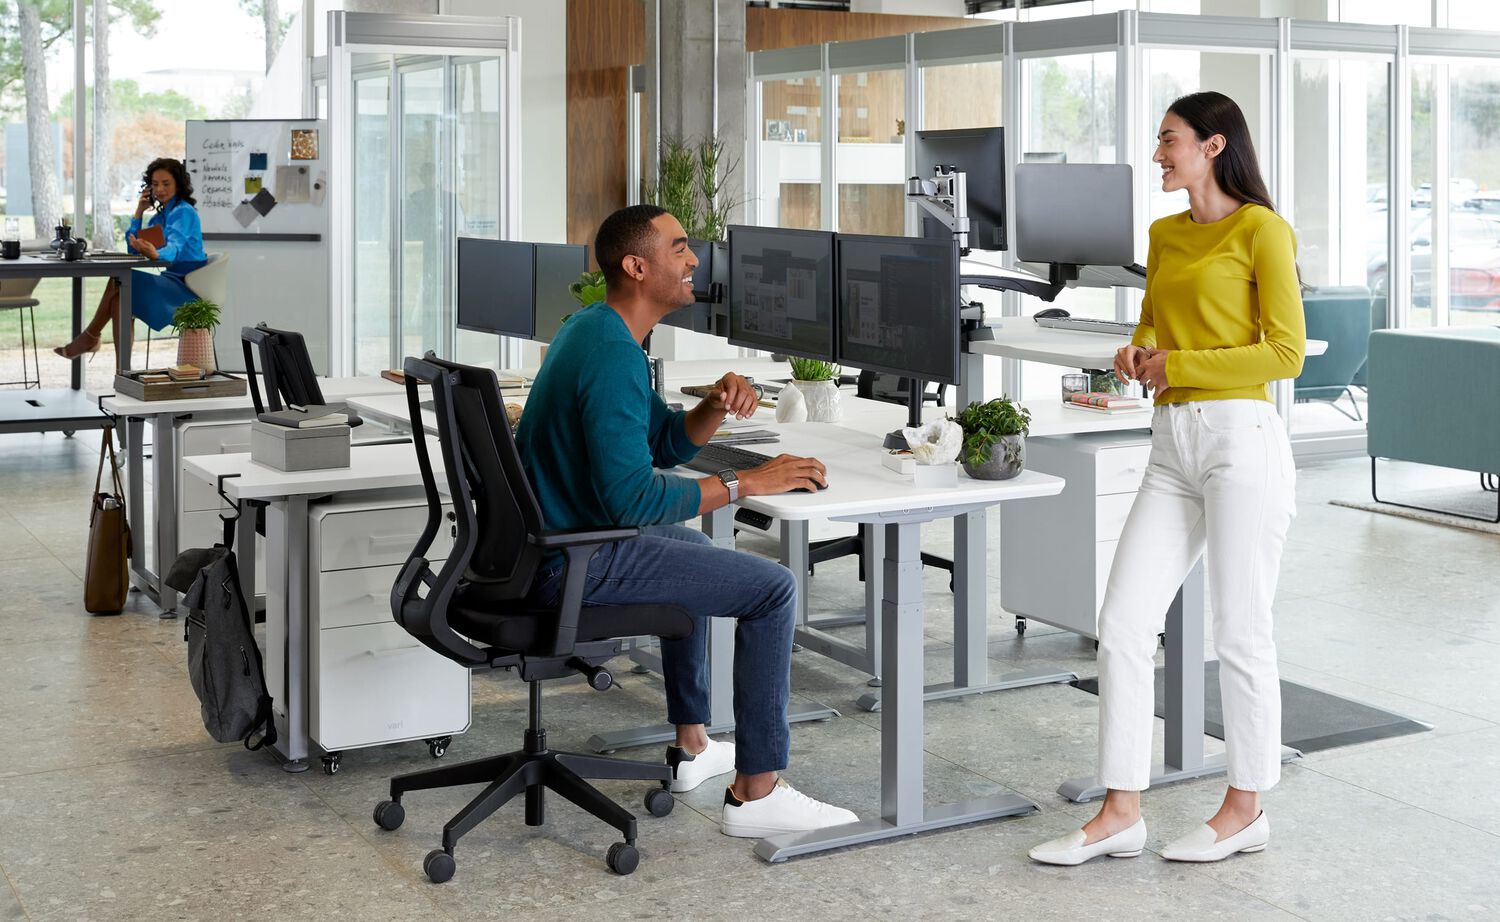 Standing Desks & Office Furniture | VARIDESK is Now Vari®